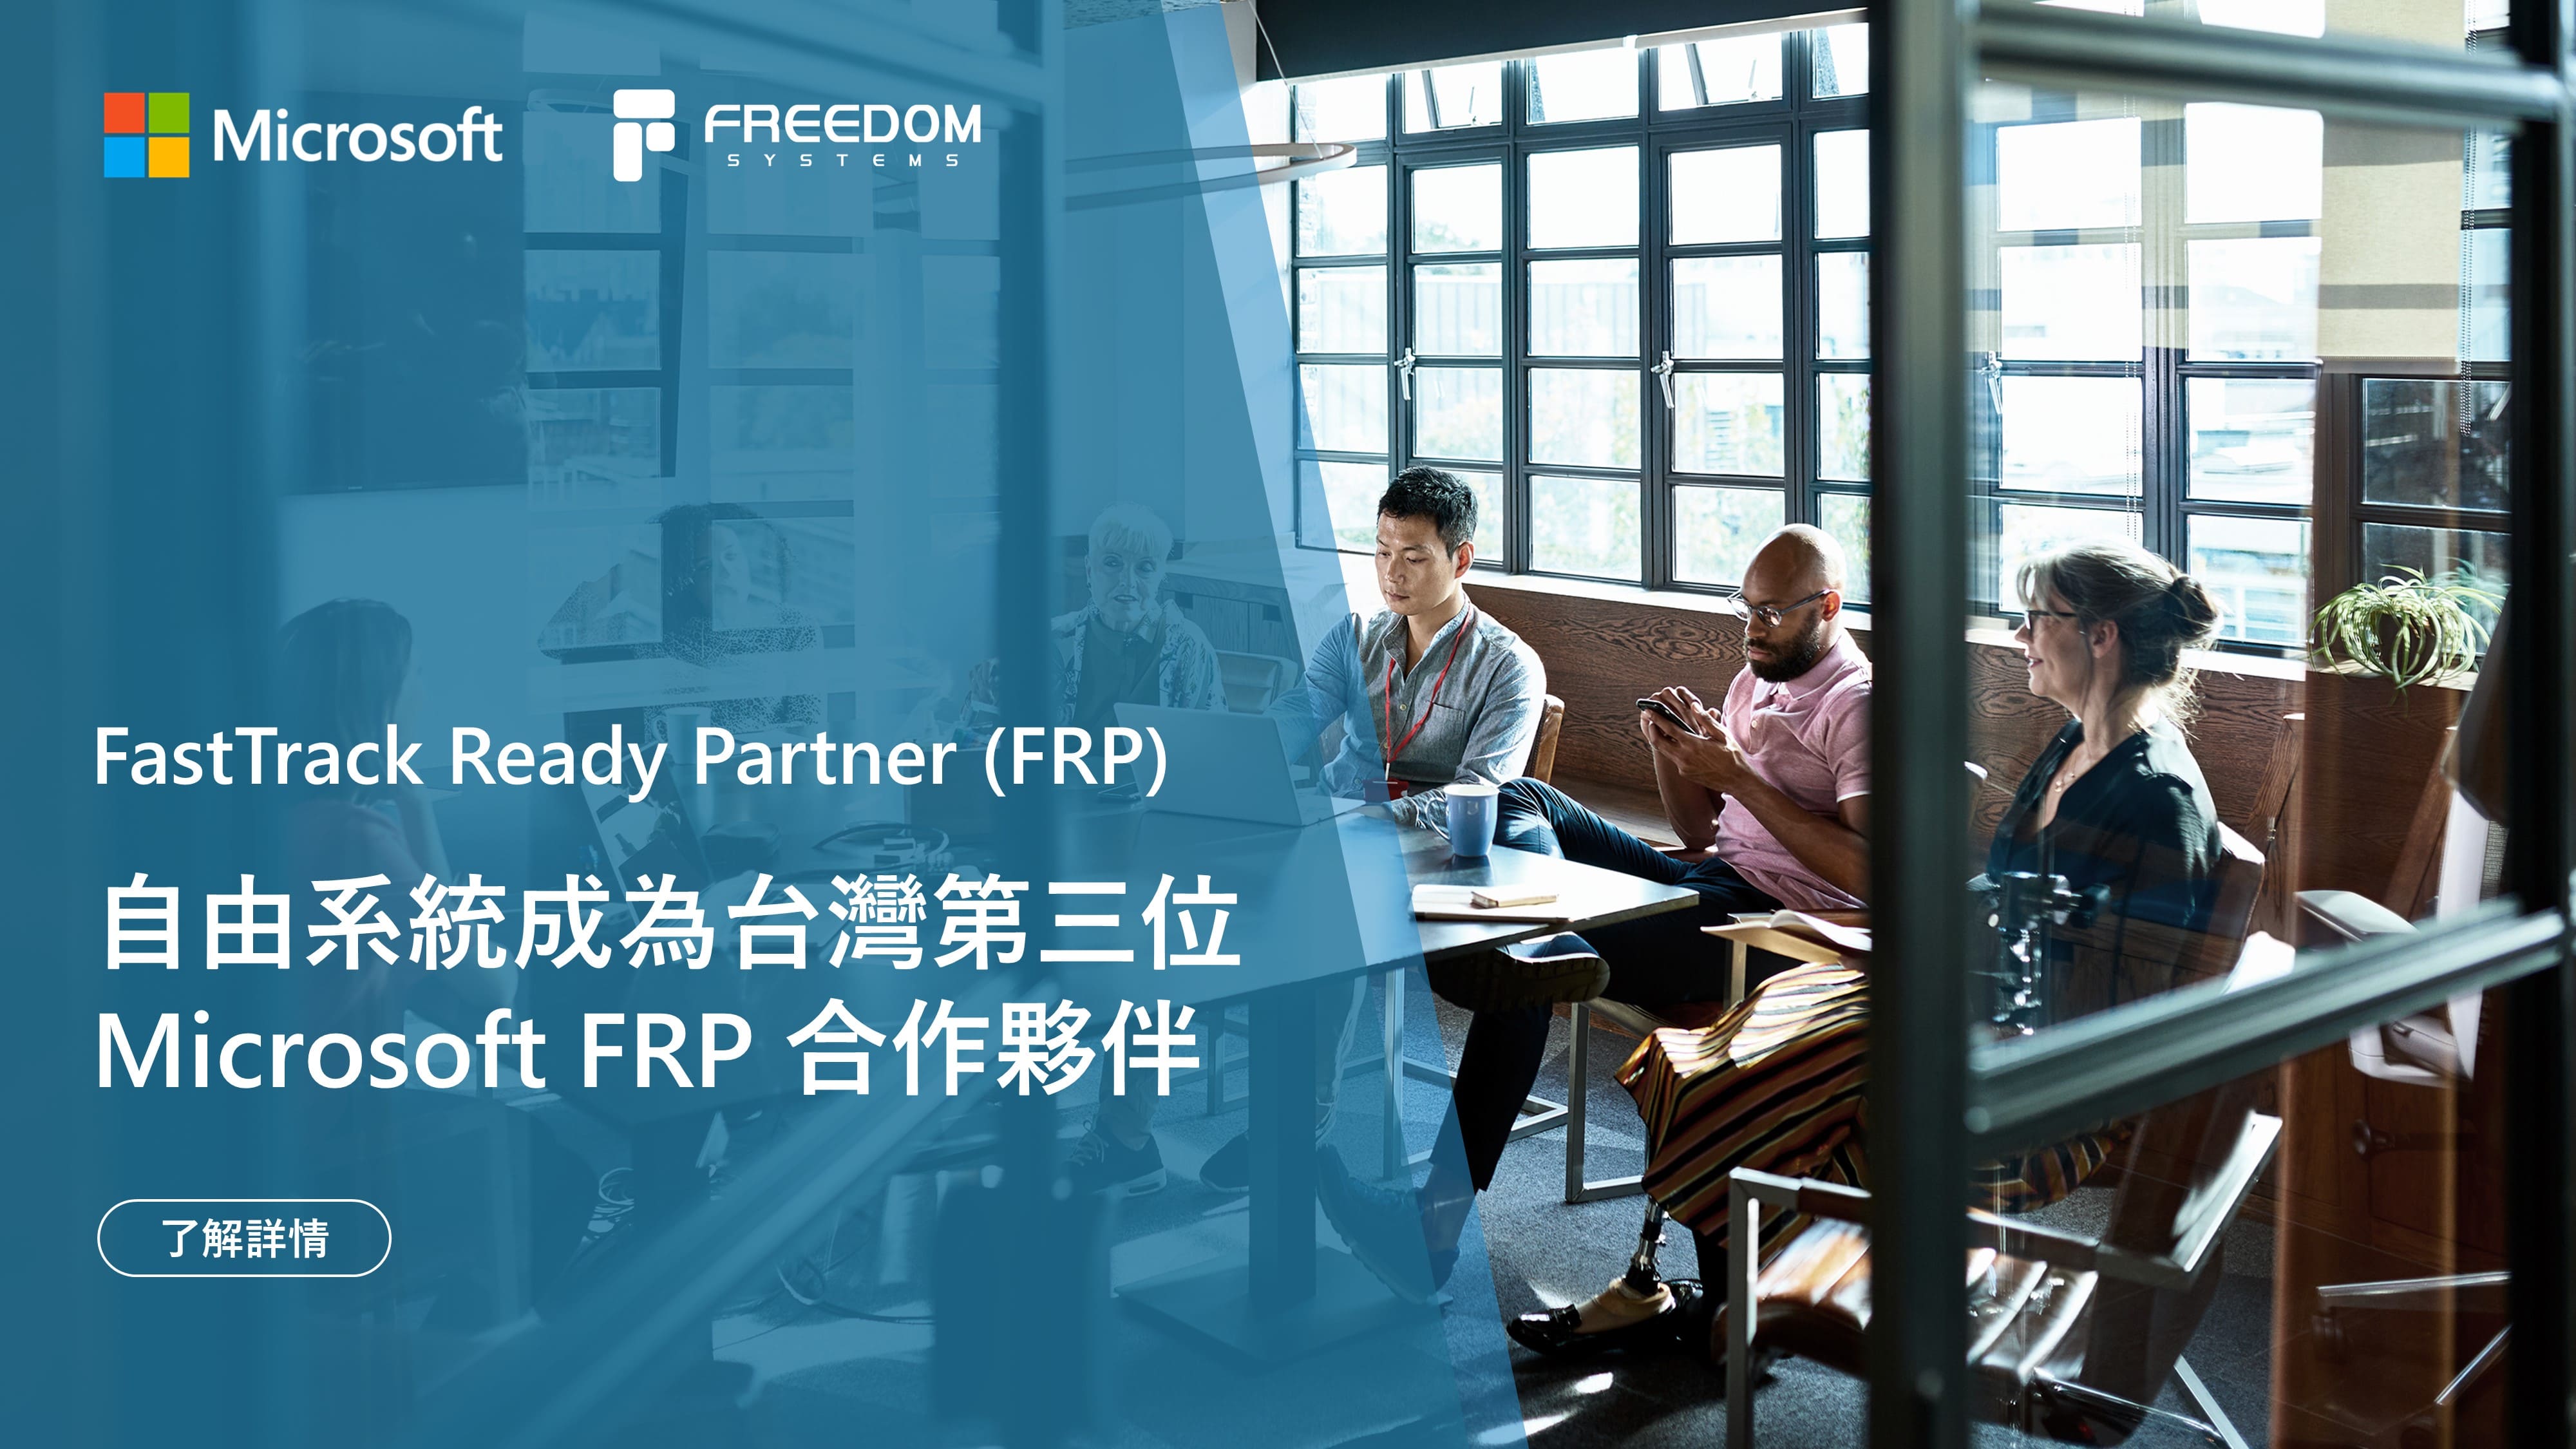 自由系統成為第三位微軟 FRP 合作夥伴